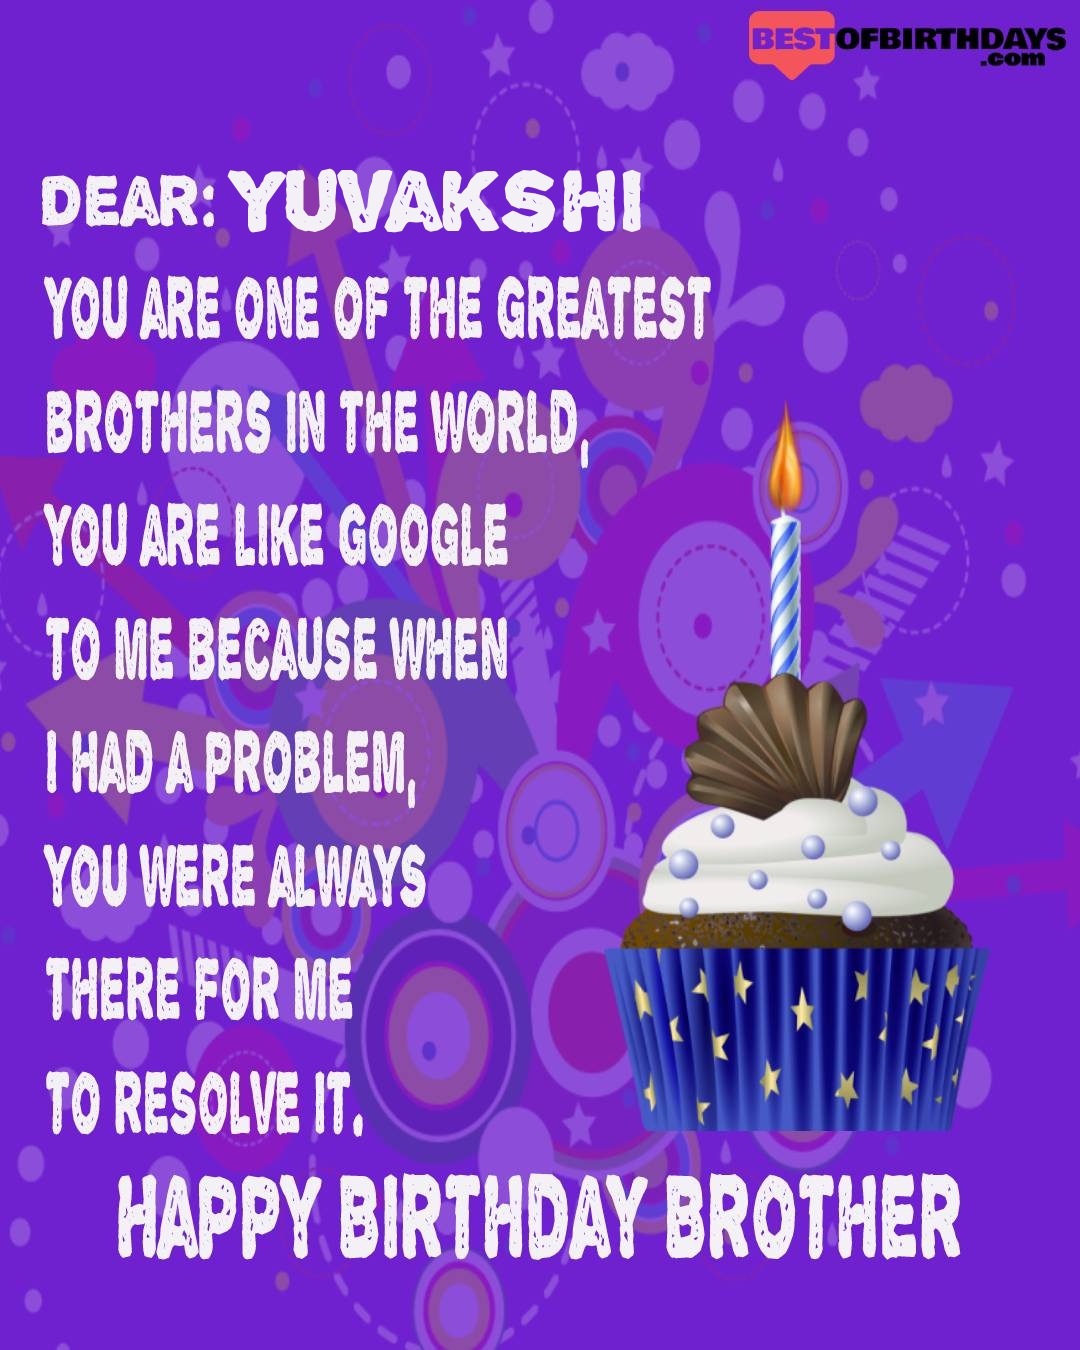 Happy birthday yuvakshi bhai brother bro